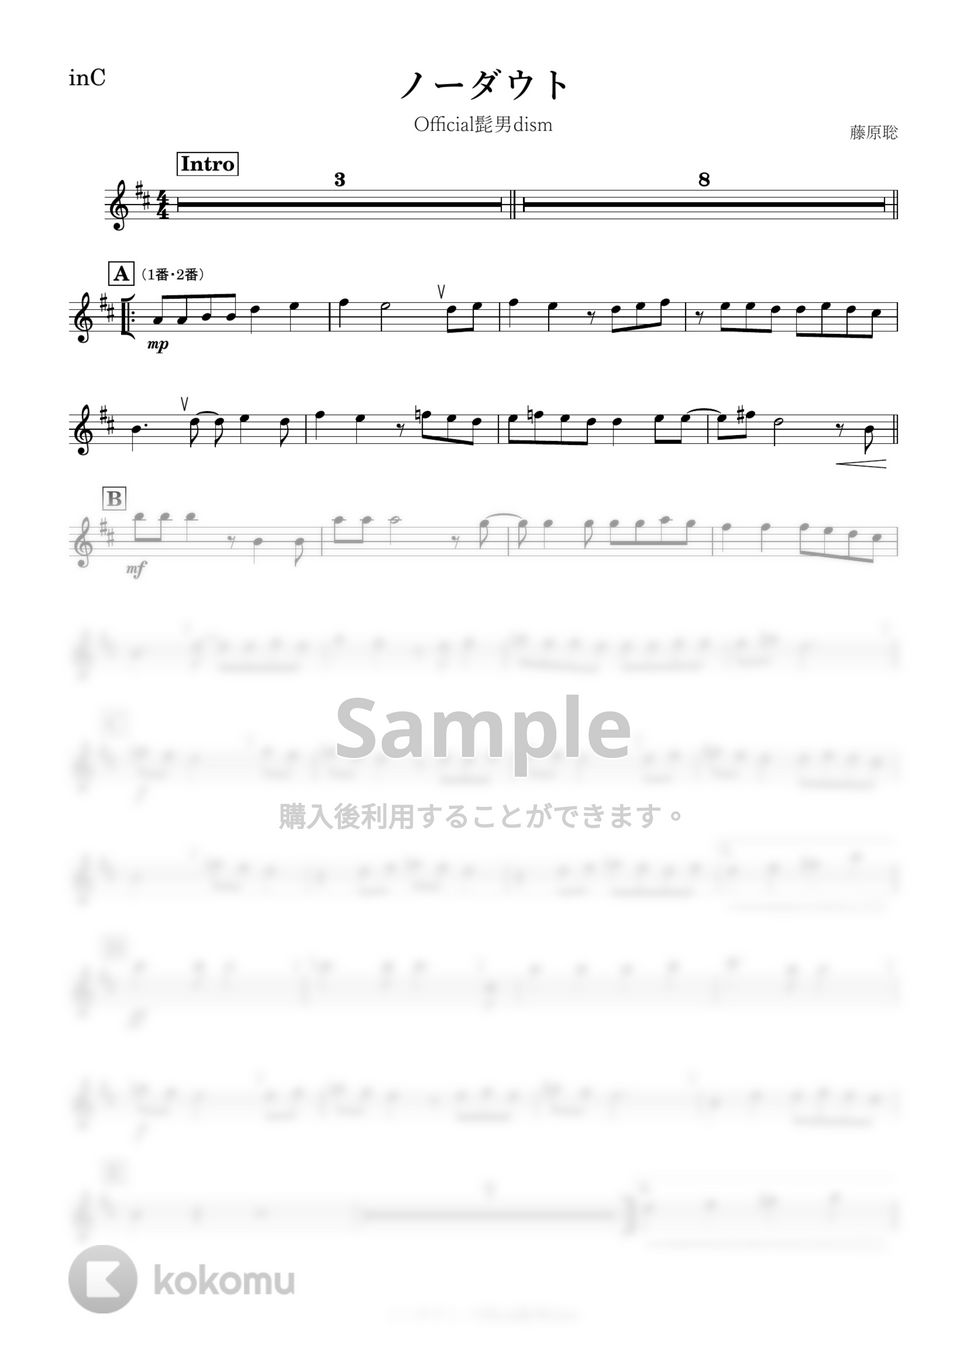 Official髭男dism - ノーダウト (C) by kanamusic